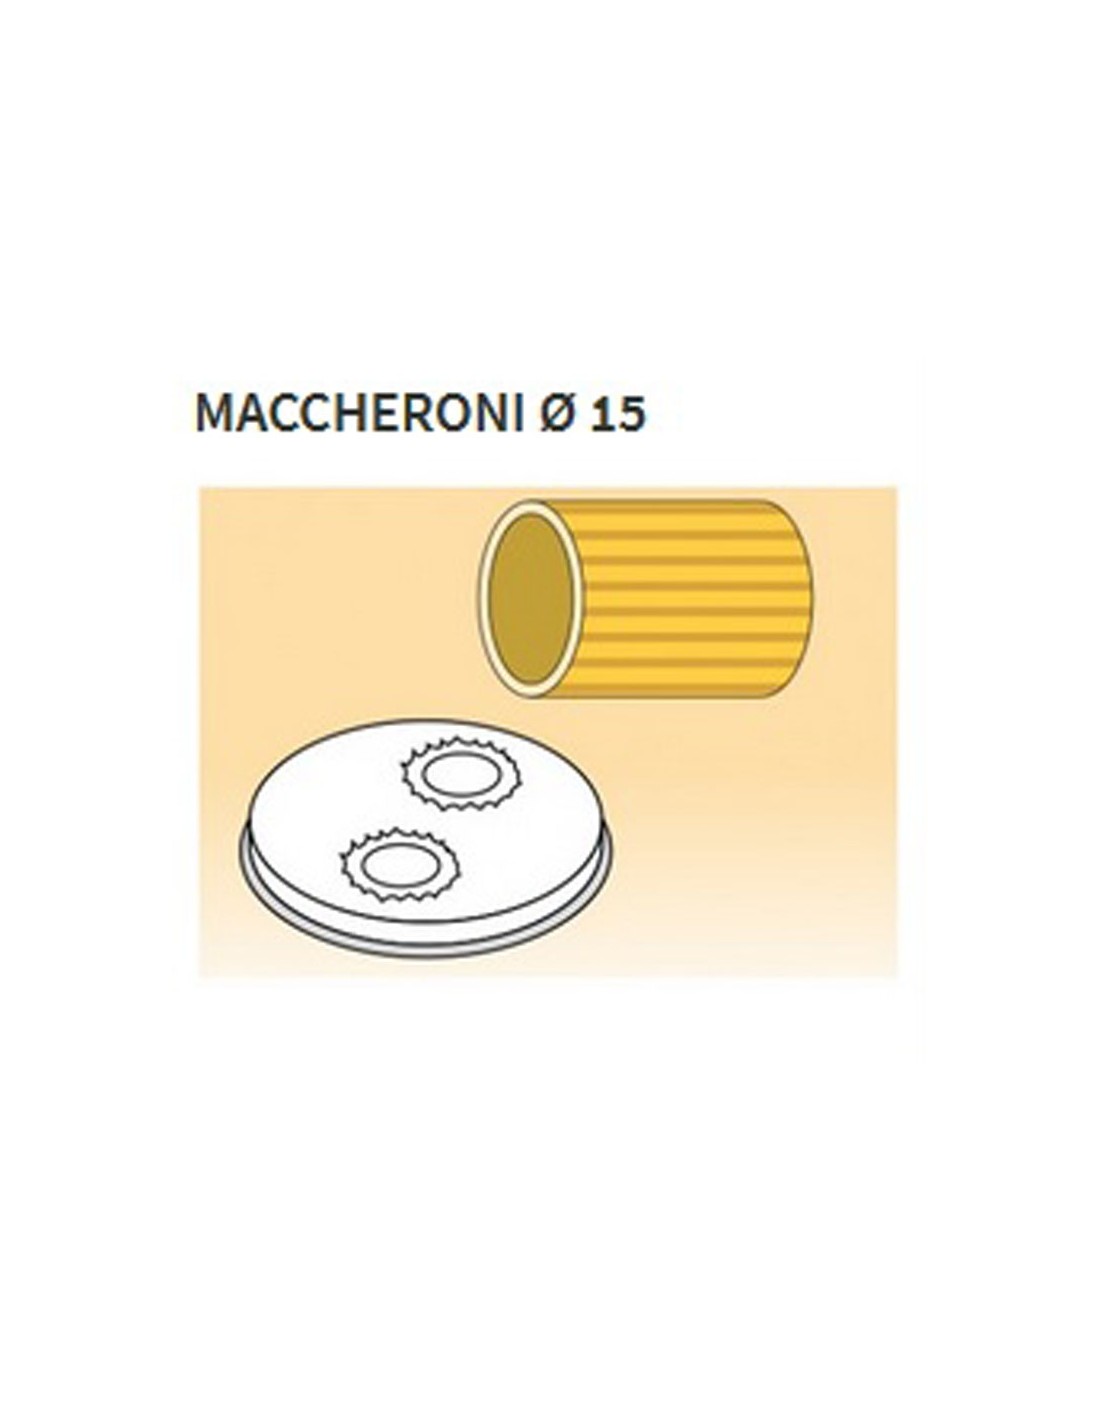 Trafile formati vari in lega ottone - Bronzo - Per macchina pasta fresca modello MPF8N - Maccheroni Ø mm 15